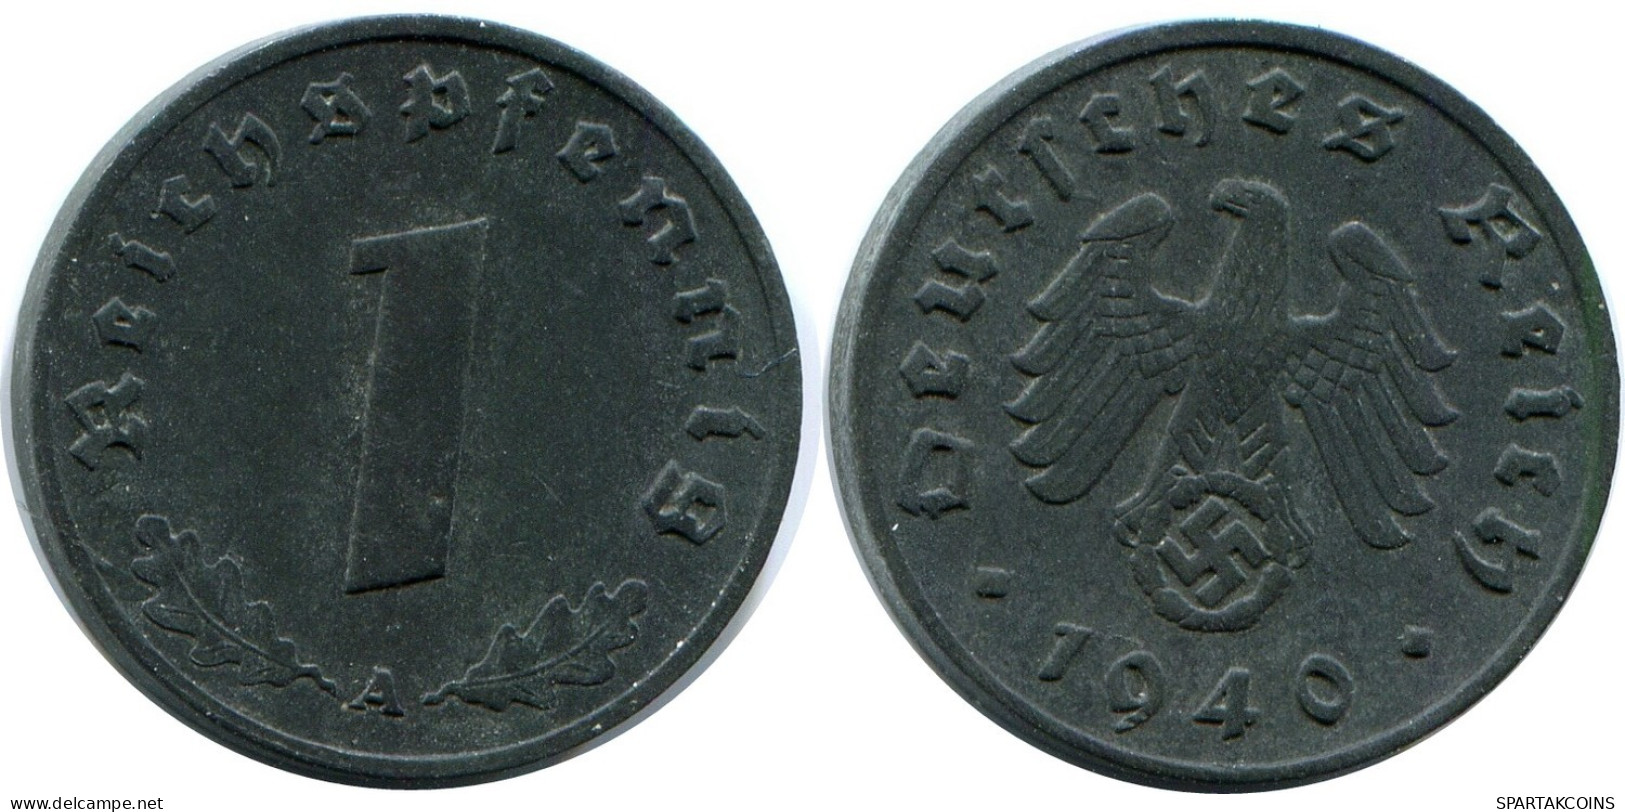 1 REICHSPFENNIG 1940 A GERMANY Coin #DB809.U.A - 1 Reichspfennig